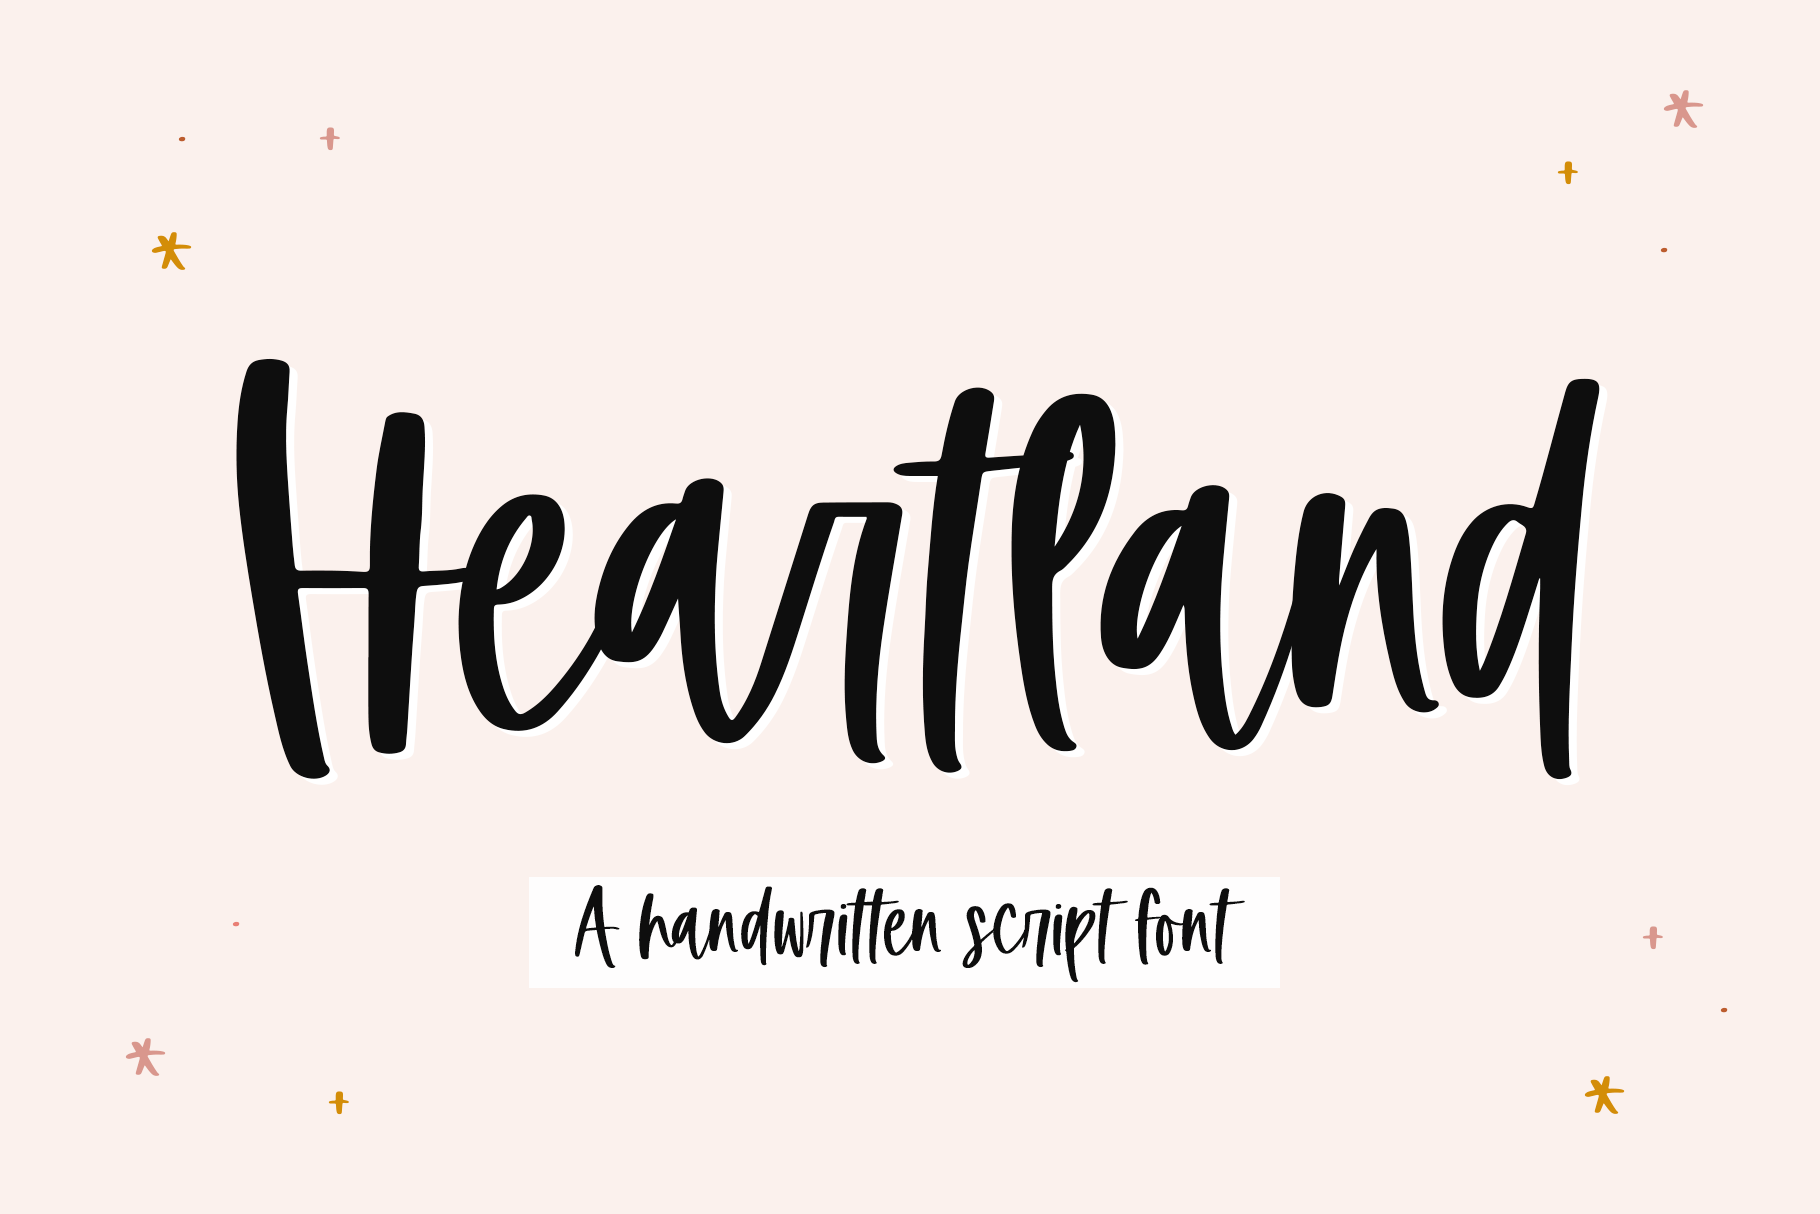 Heartland A Handwritten Script Font By Ka Designs Thehungryjpeg Com